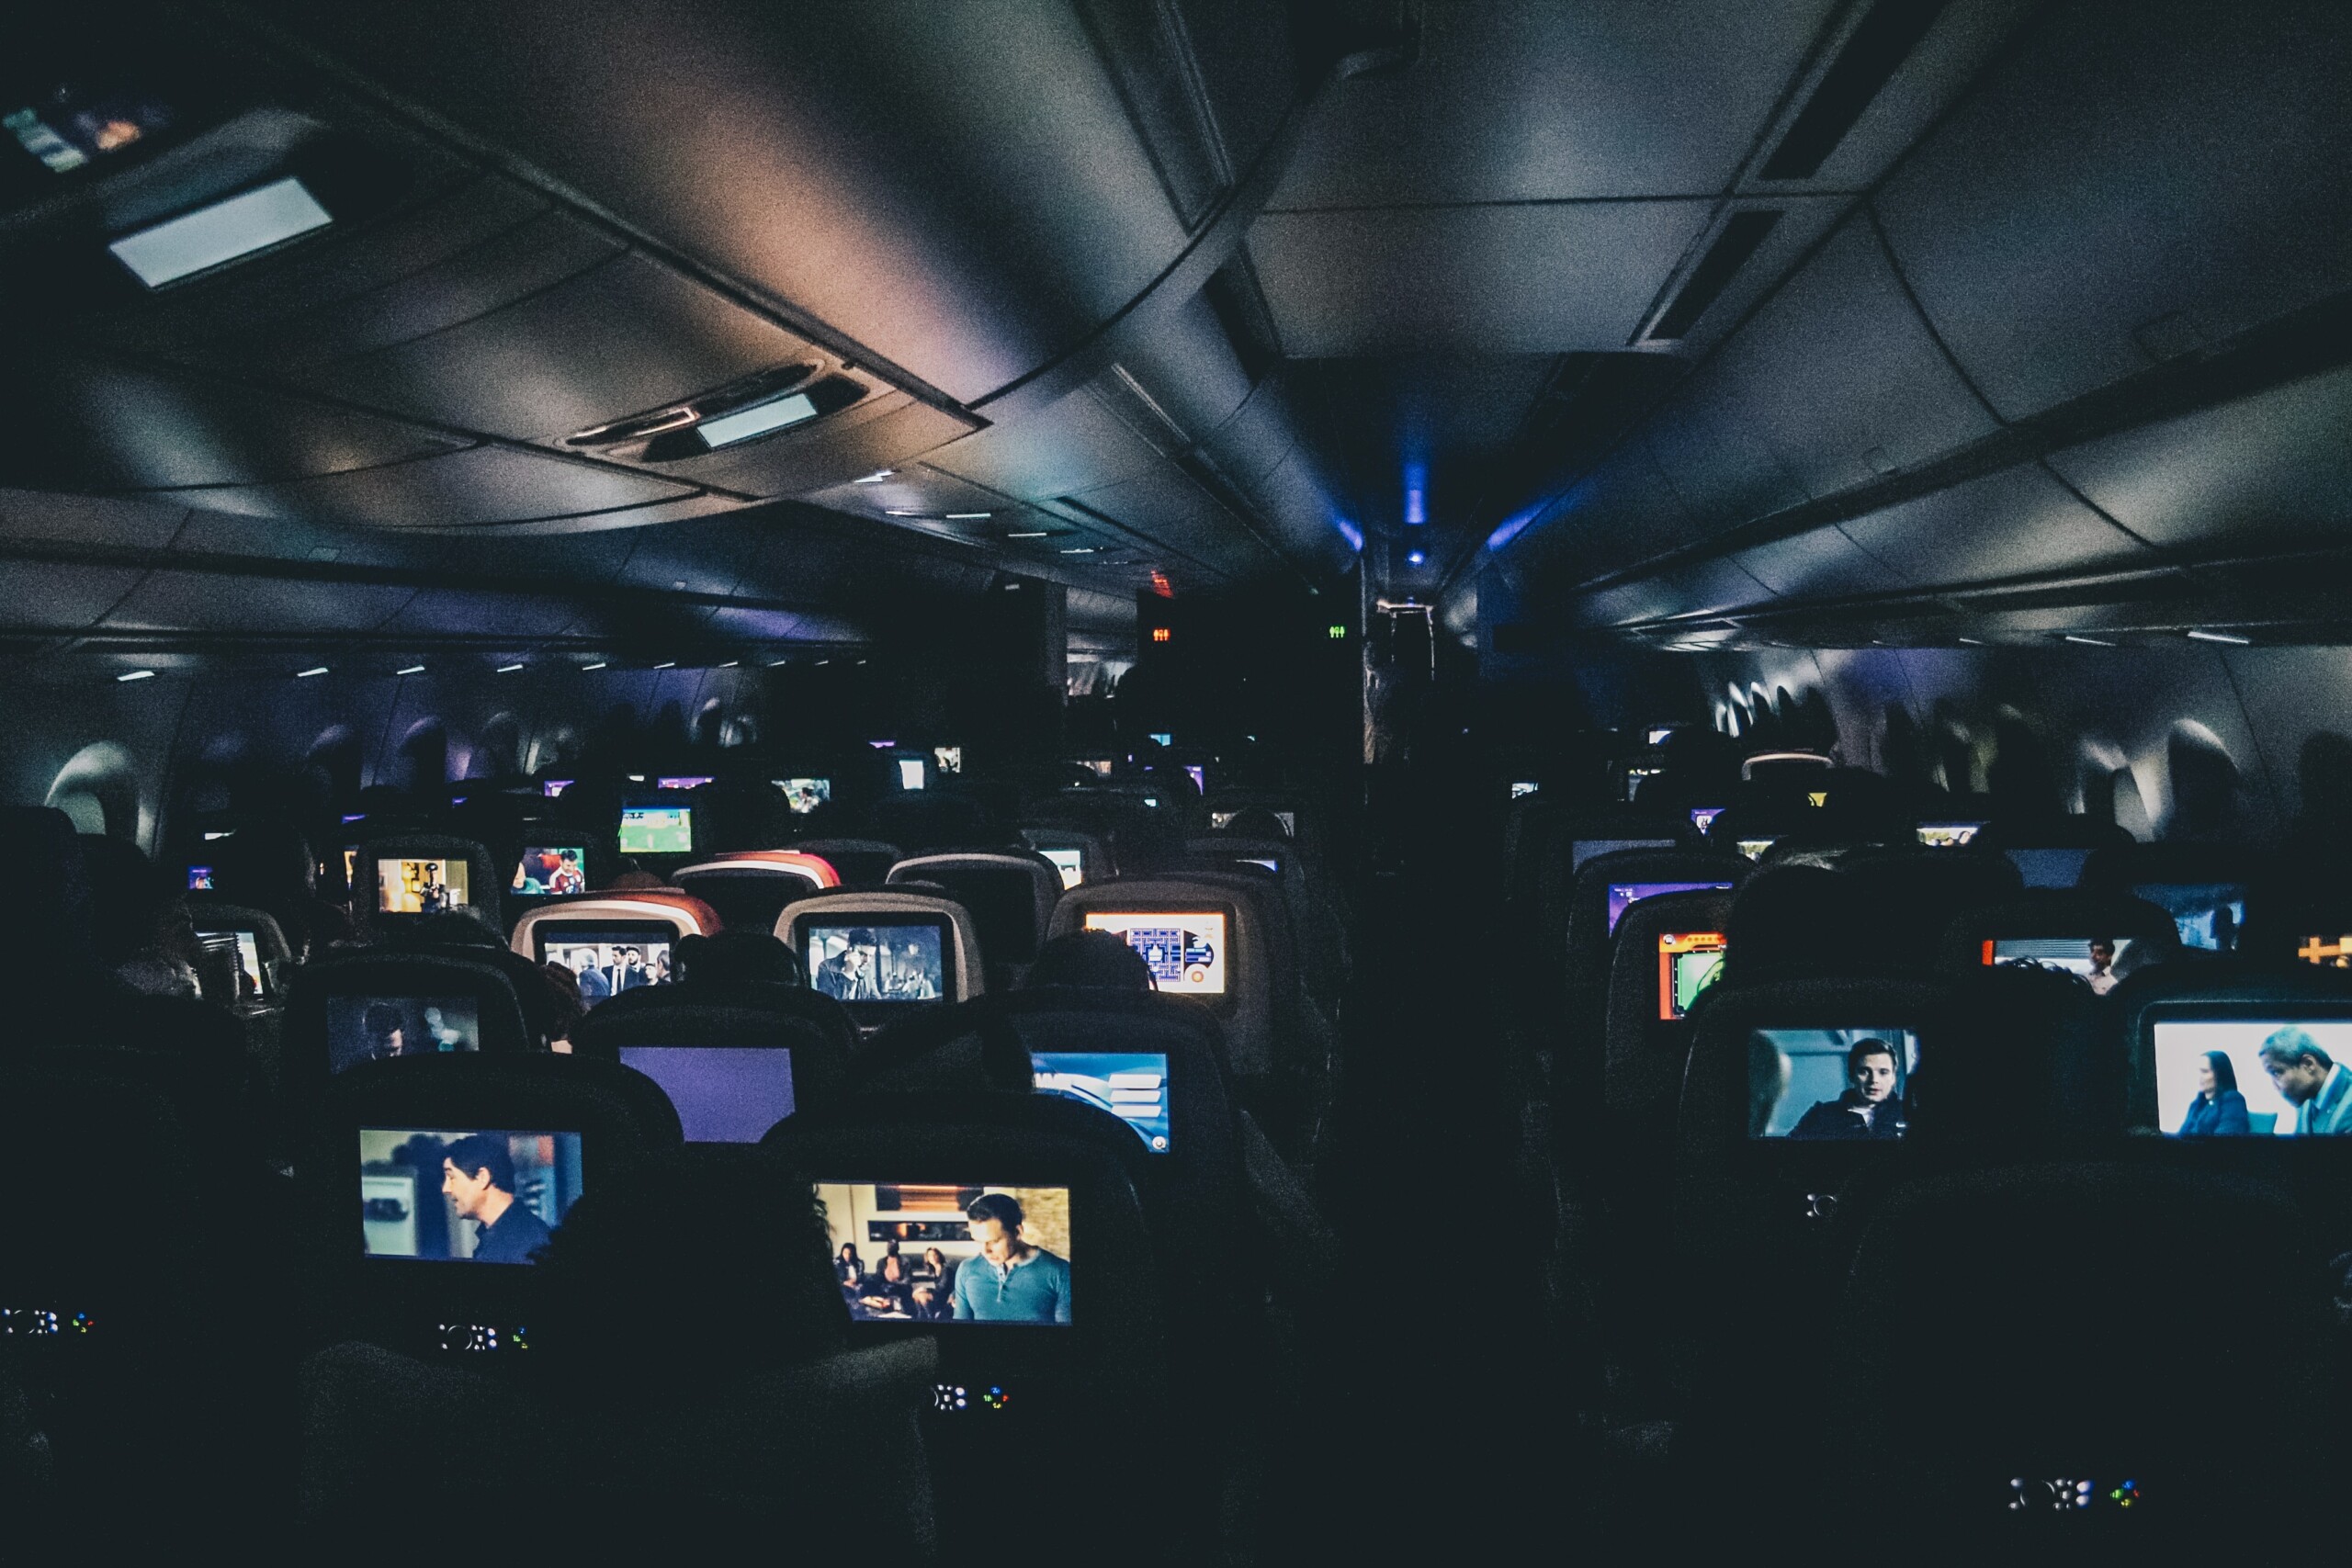 Dicas para quem vai viajar sozinho de ônibus, avião ou carro | Poltronas de avião reproduzindo mídia para os passageiros | Conexão123